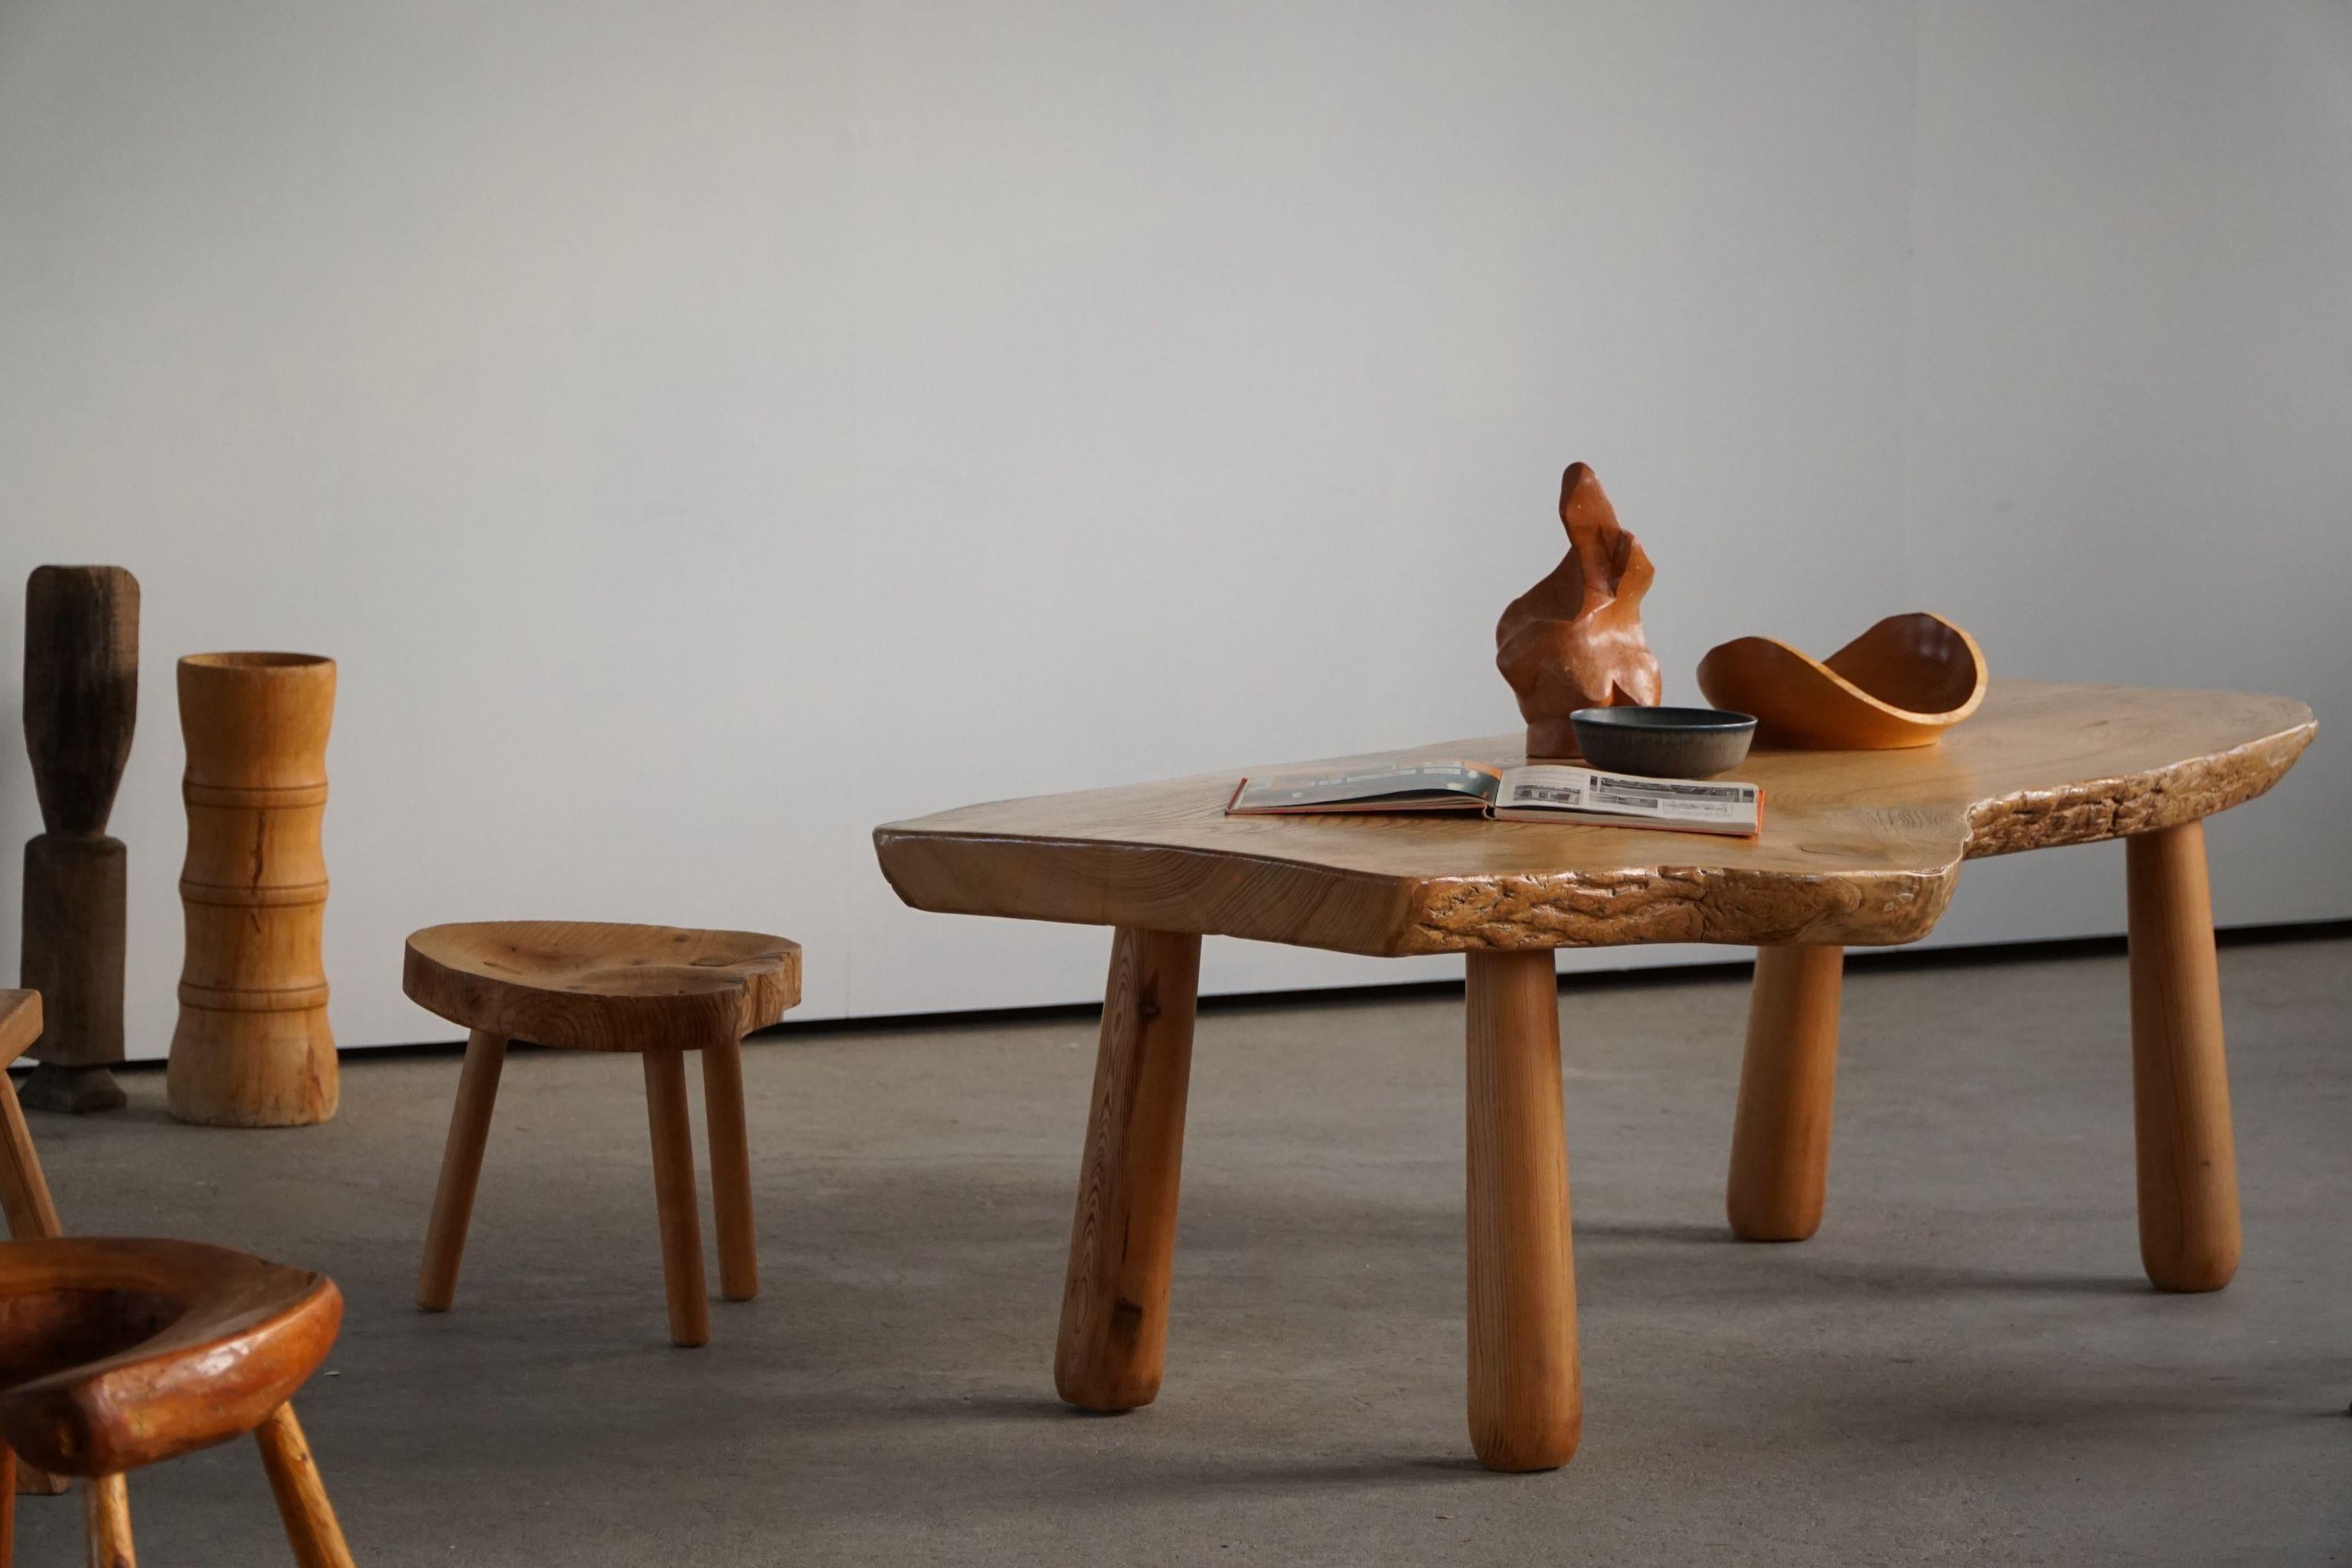 20th Century, Organic Table in Pine with Club Legs, Wabi Sabi, Swedish Modern 13